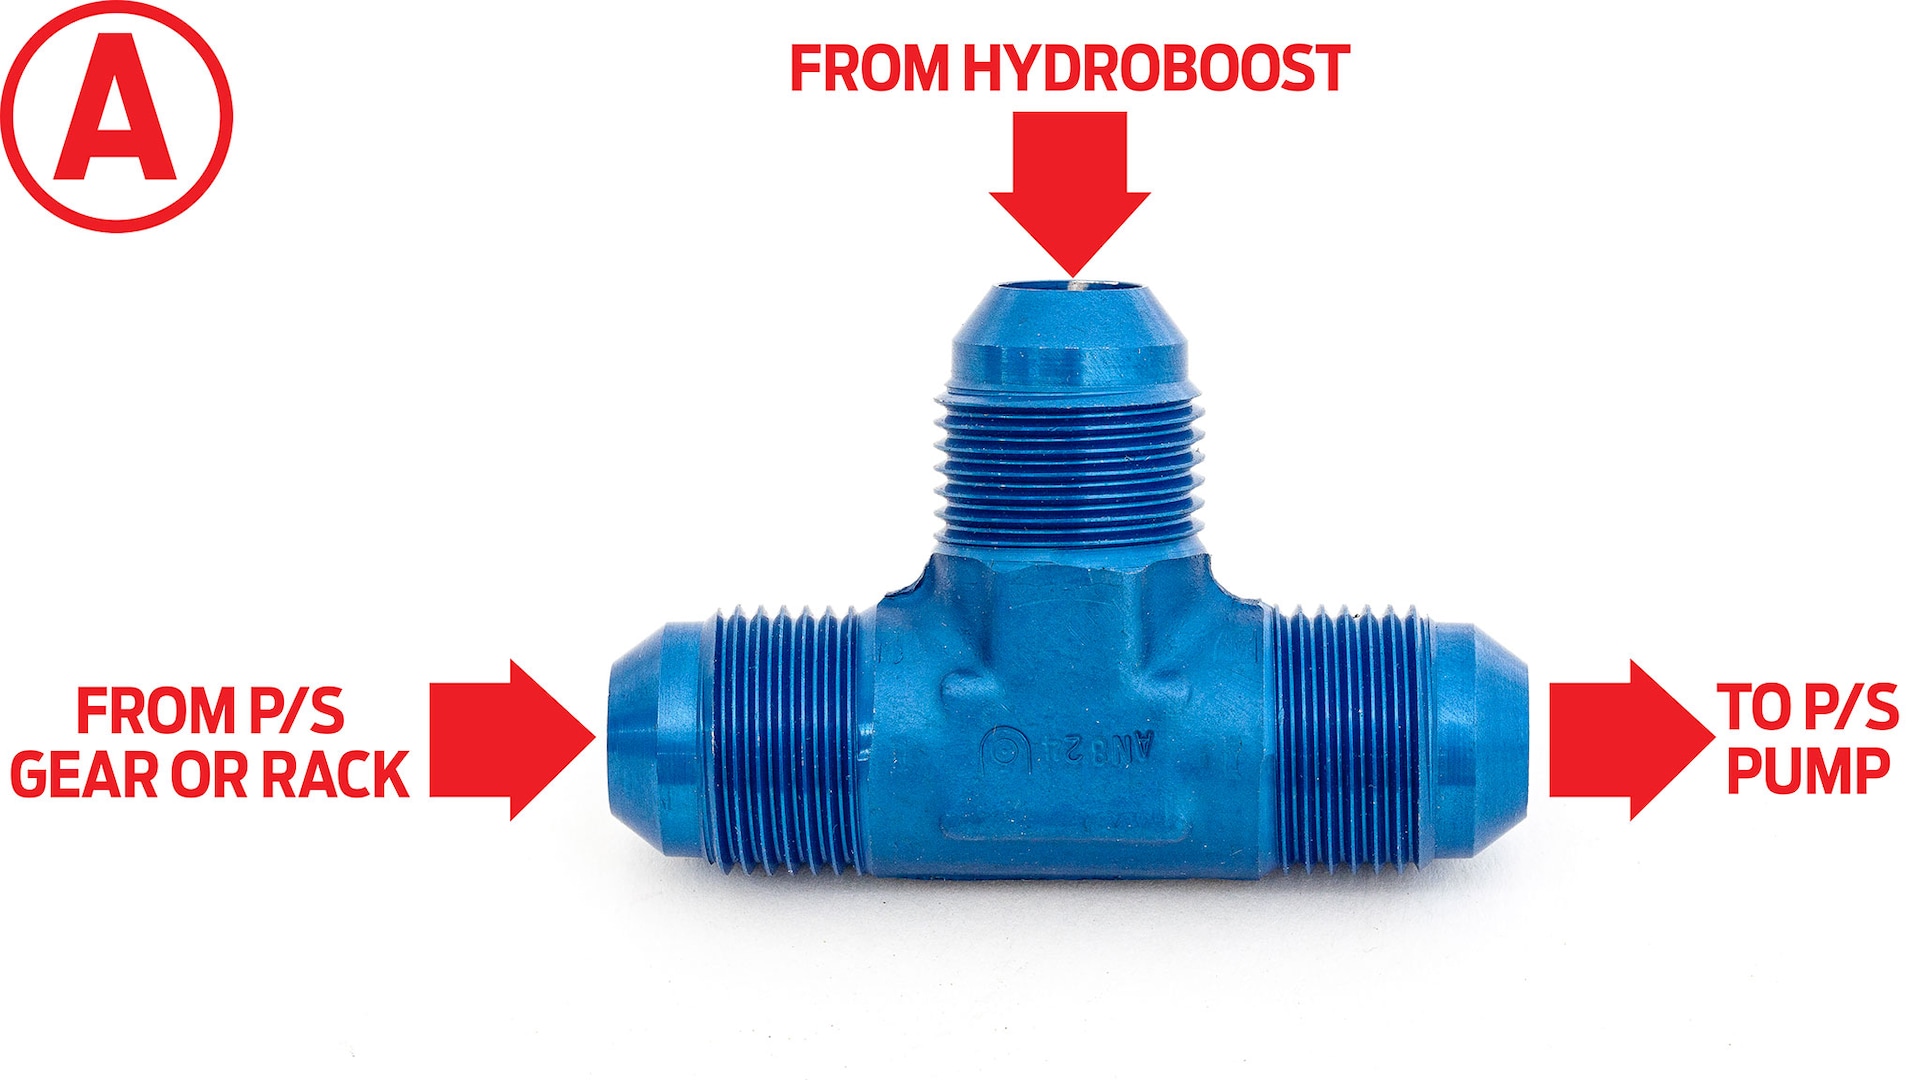 151 Tee hookup for 1 return hose Hydroboost system_